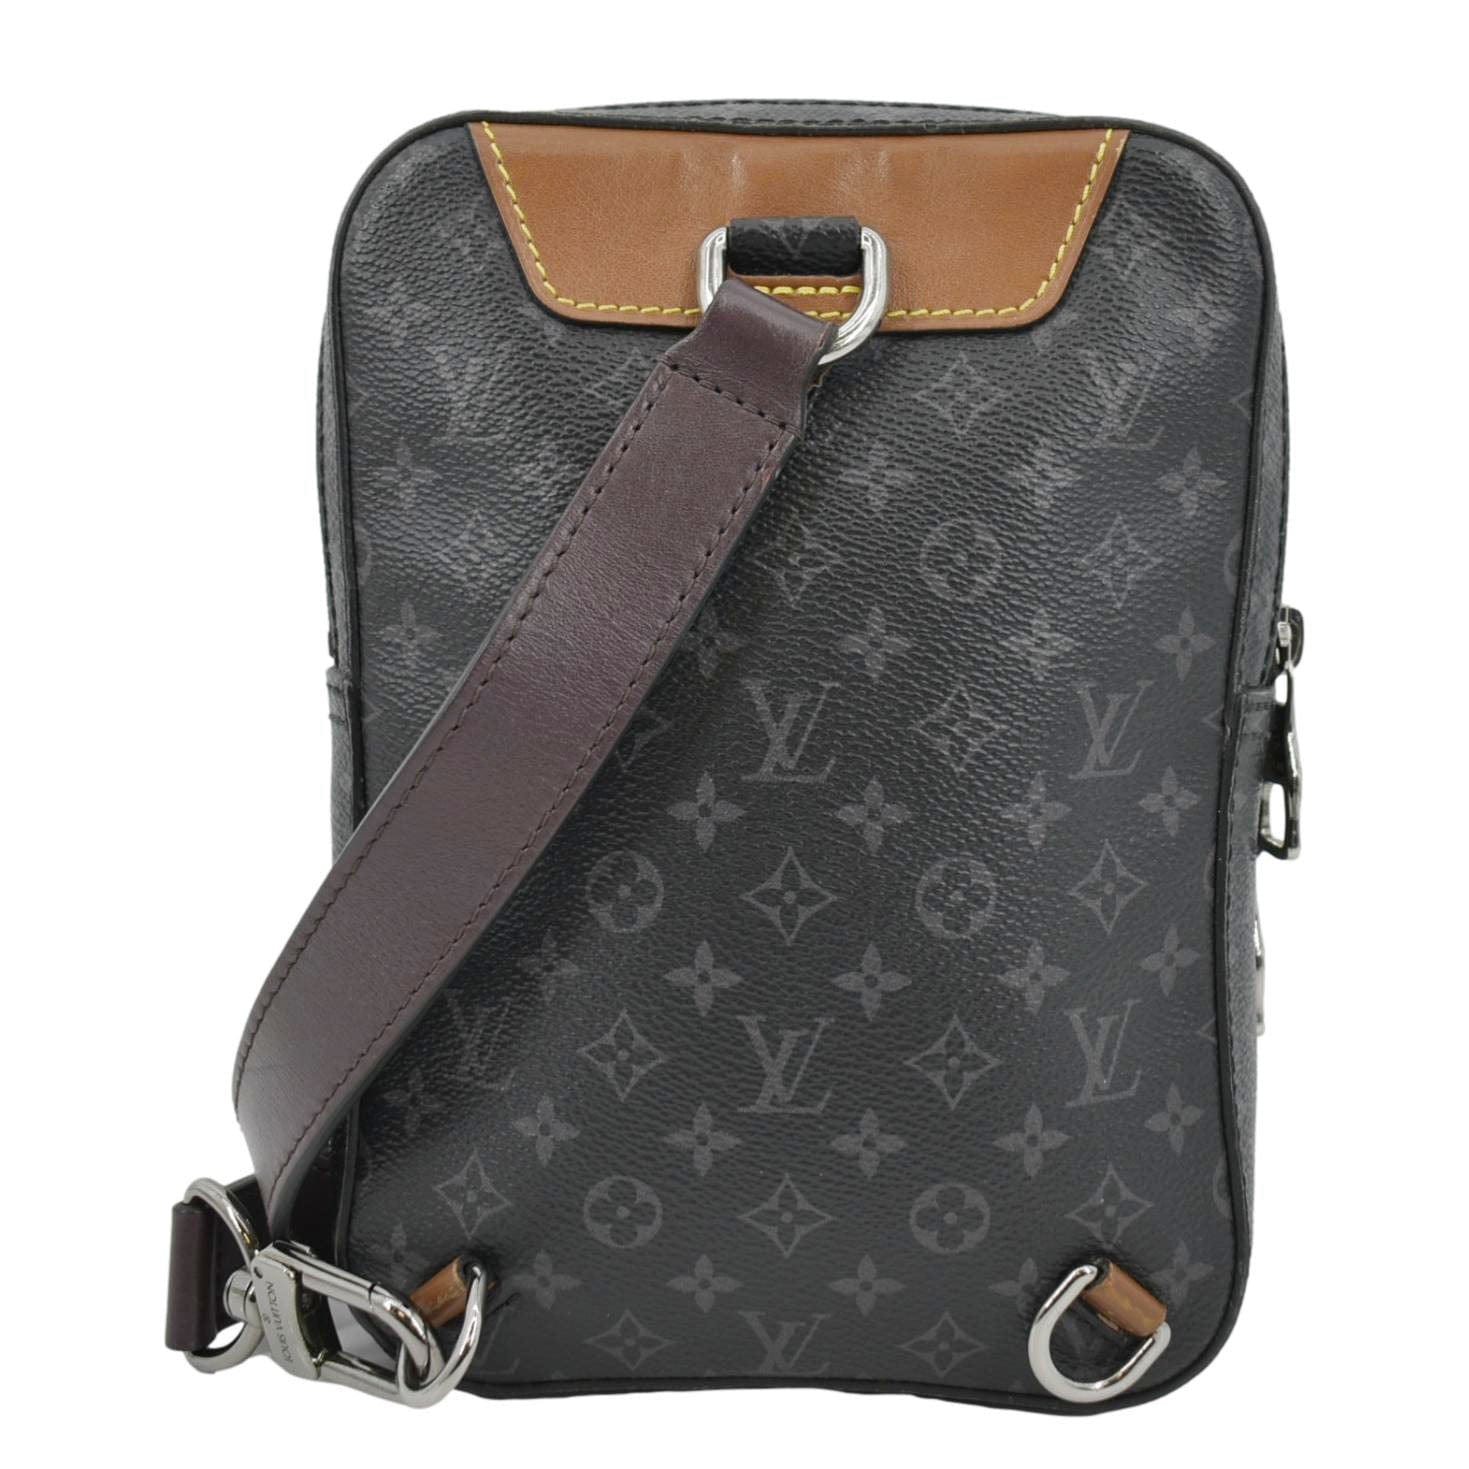 Louis Vuitton Avenue Sling Canvas Men Shoulder Bag